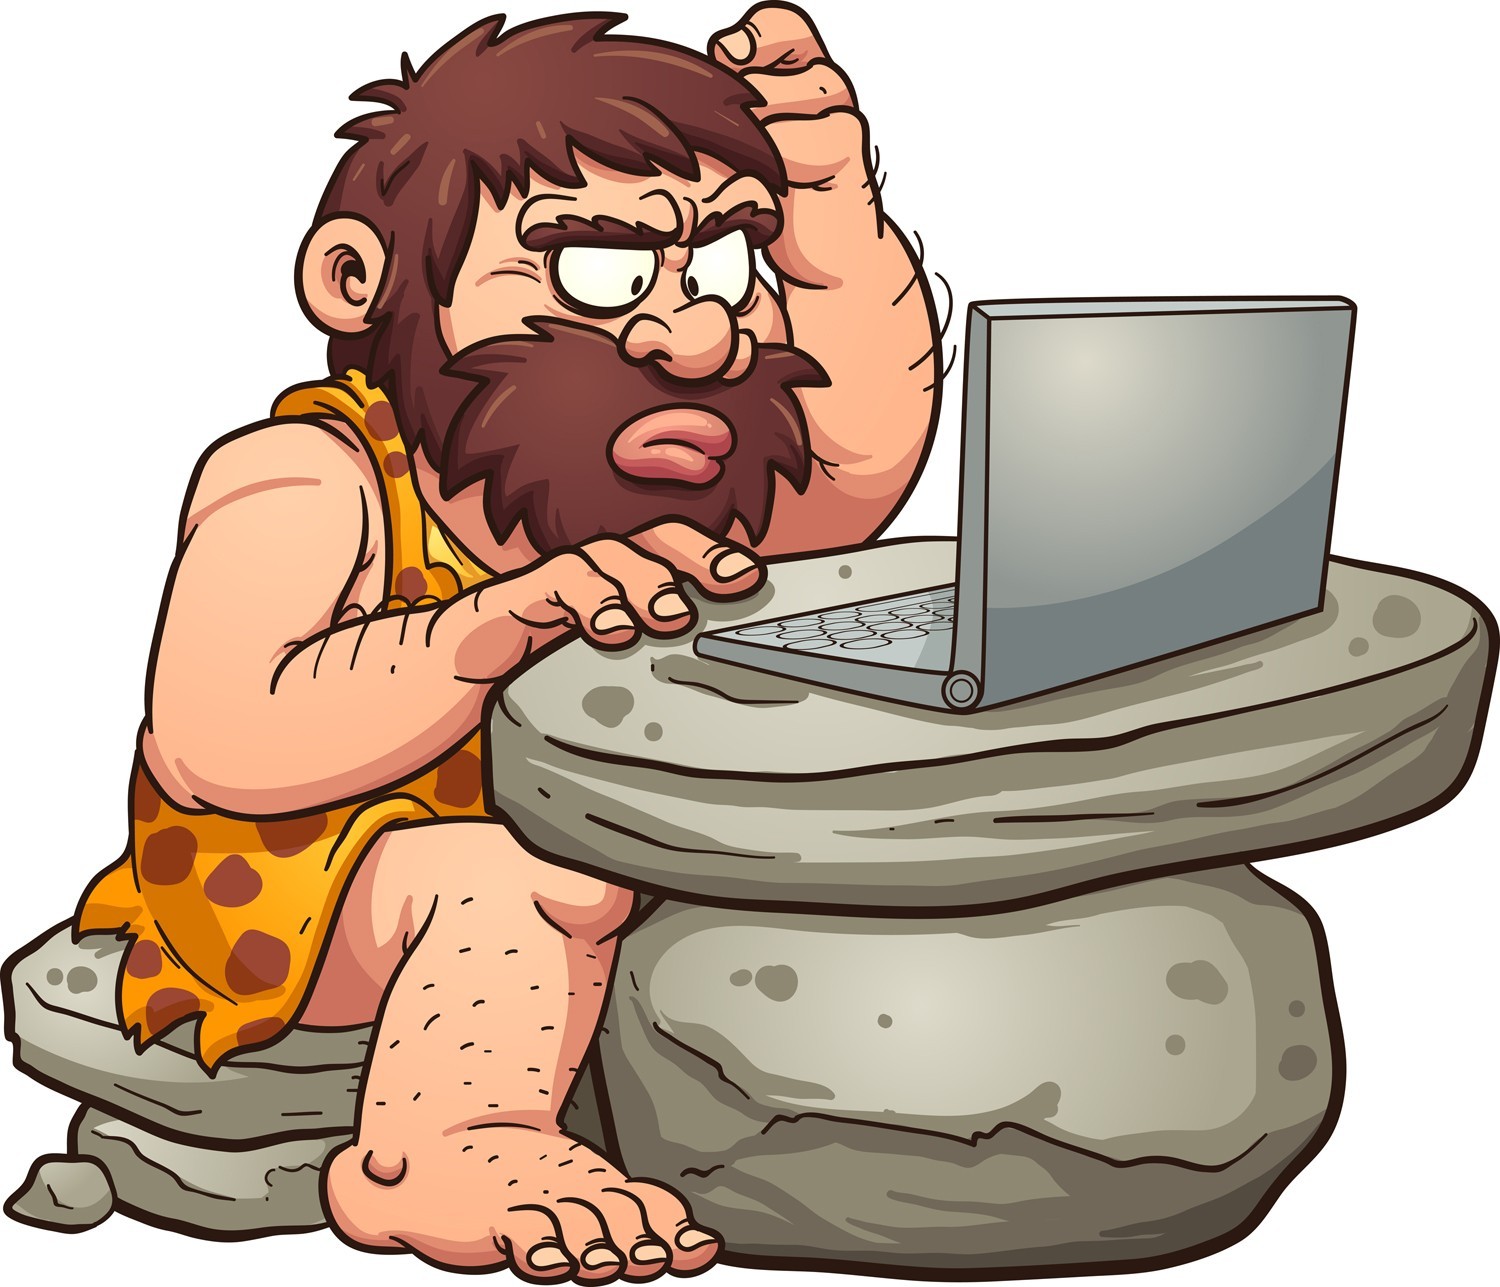 Caveman using computer